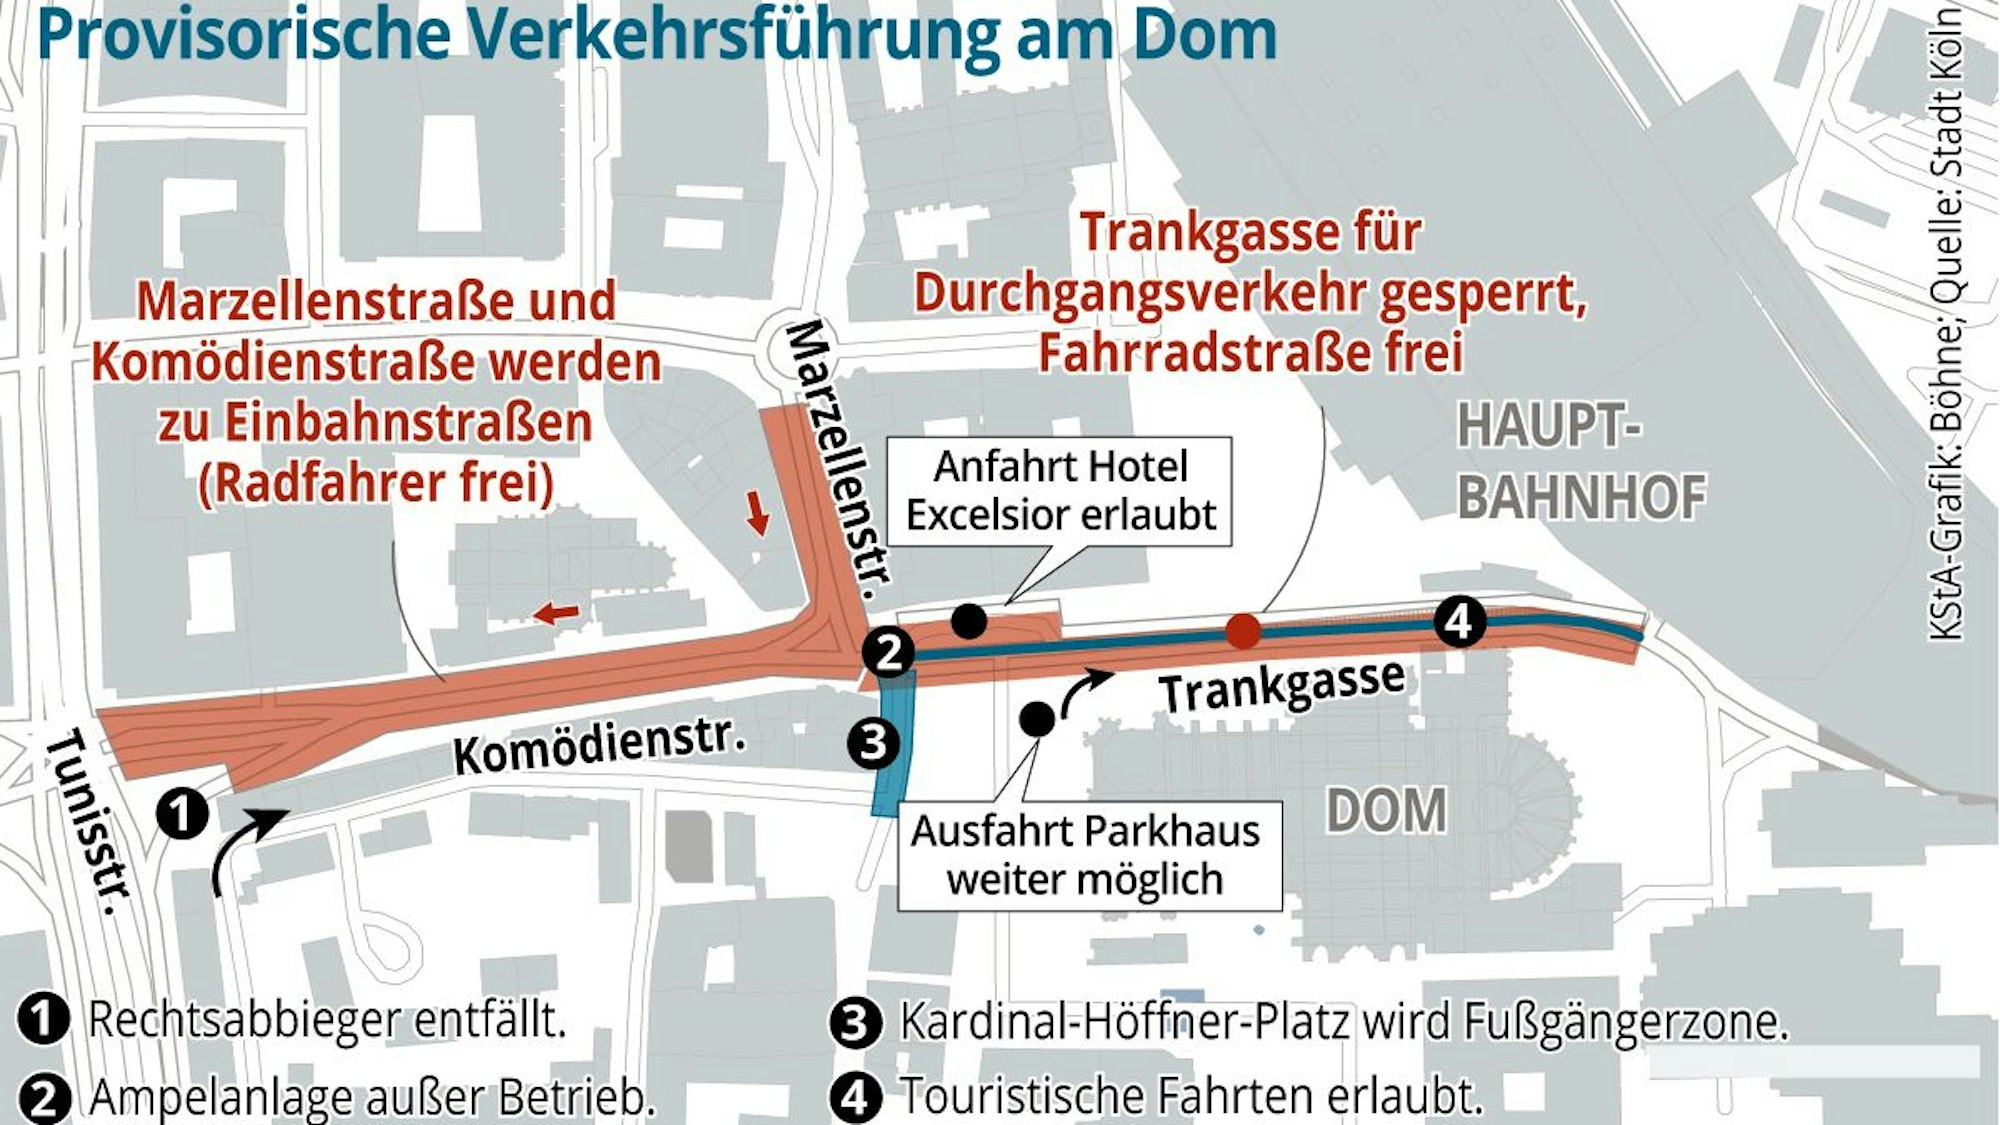 Die Grafik zeigt auf einer Karte die provisorischen Verkehrsregeln am Dom.